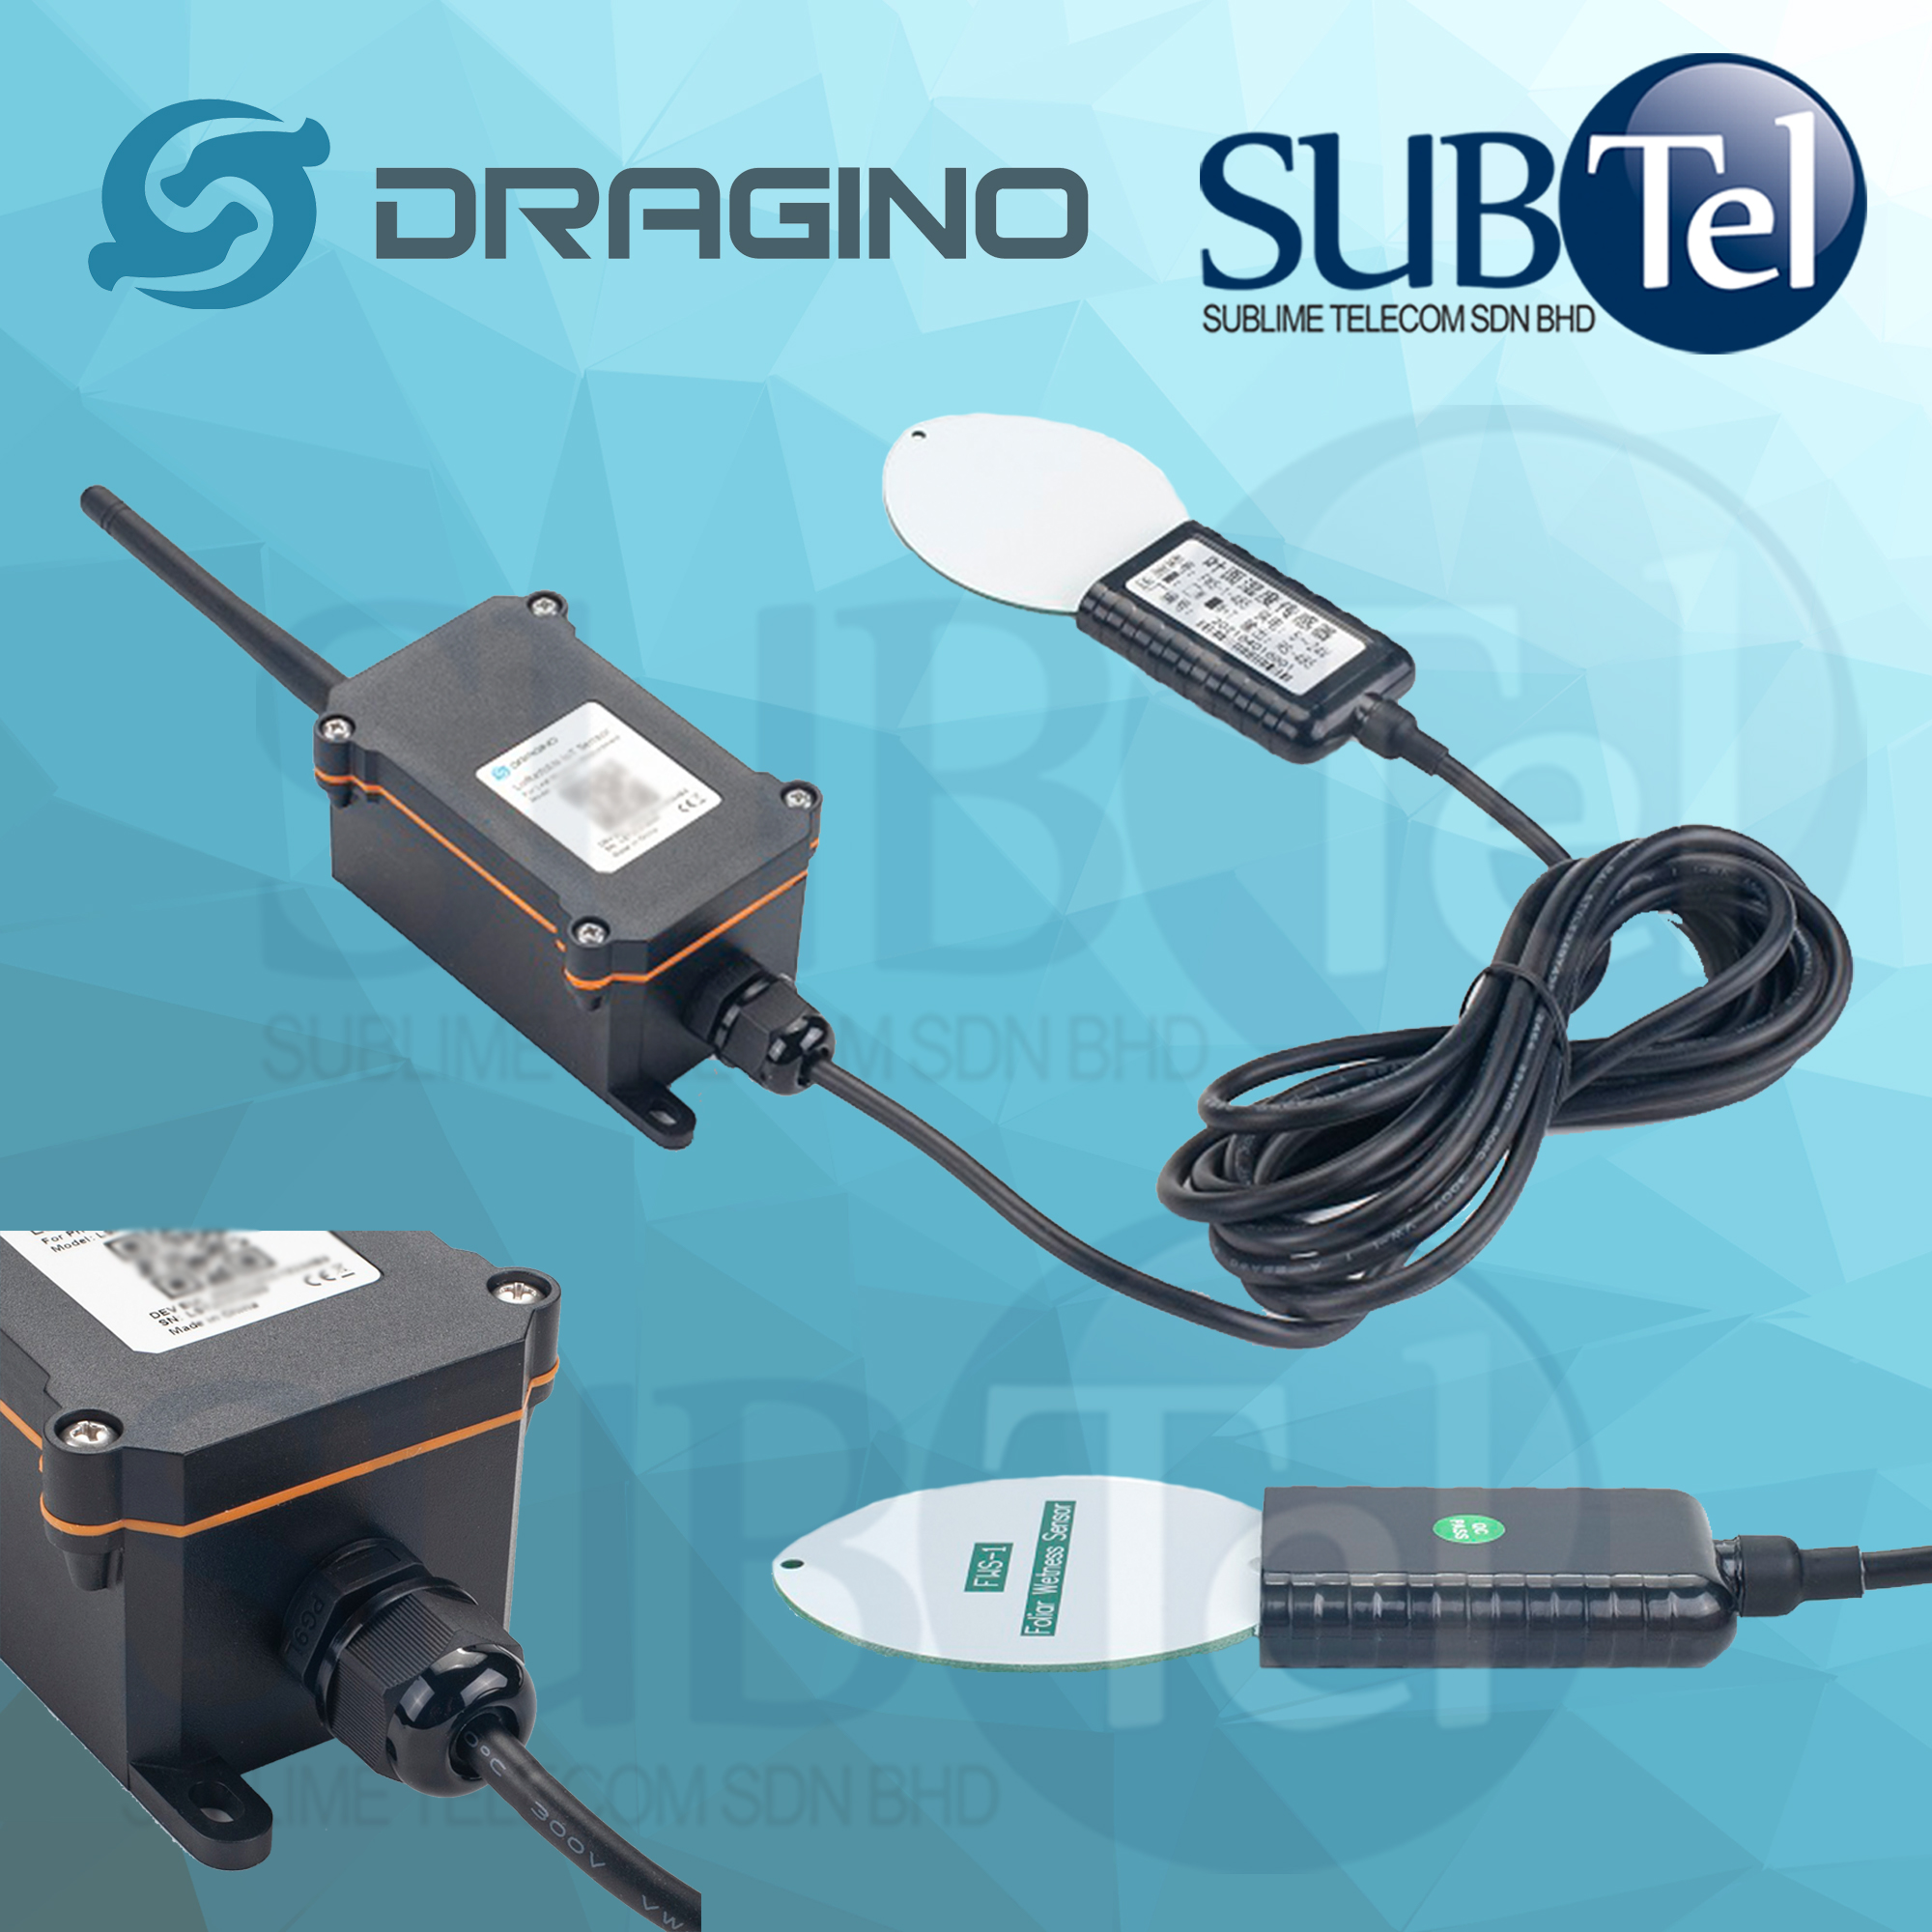 DRAGINO LLMS01-AU915 LoRaWAN Leaf Moisture Sensor LLMS01 LoRa WAN TTN